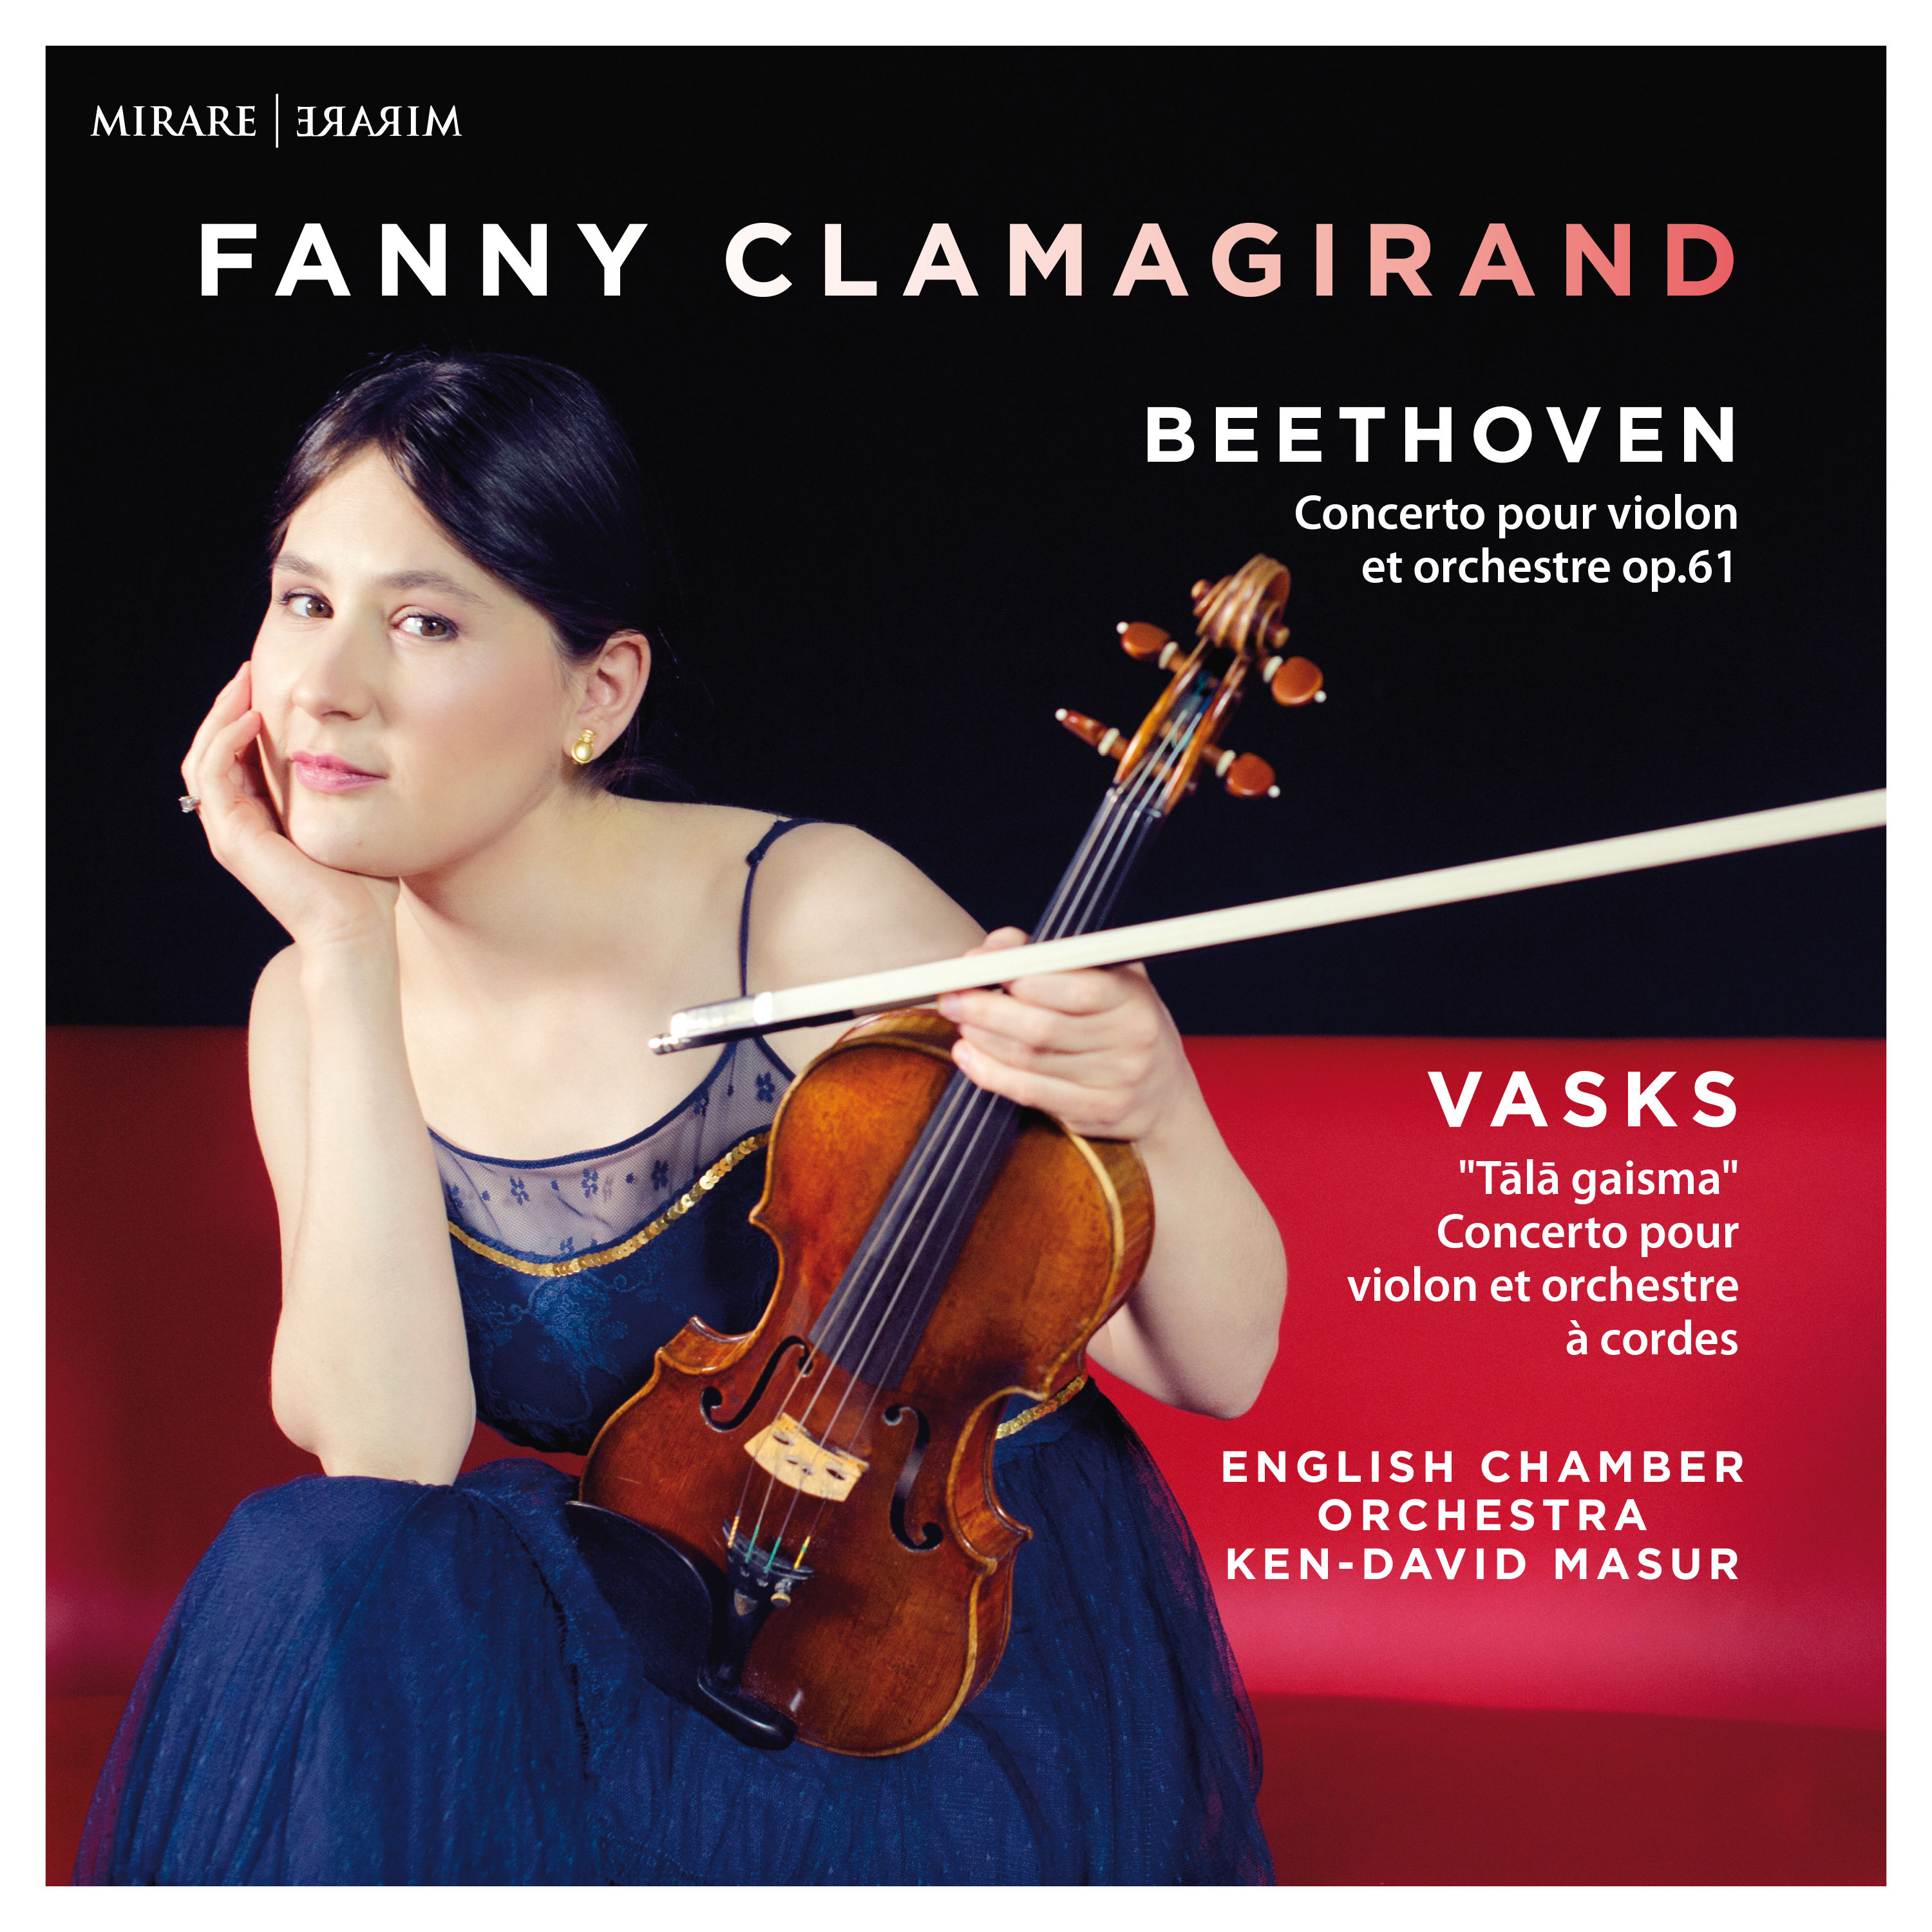 Fanny Clamagirand, English Chamber Orchestra and Ken David Masur - Beethoven, Vasks (2020) [FLAC 24bit/96kHz]